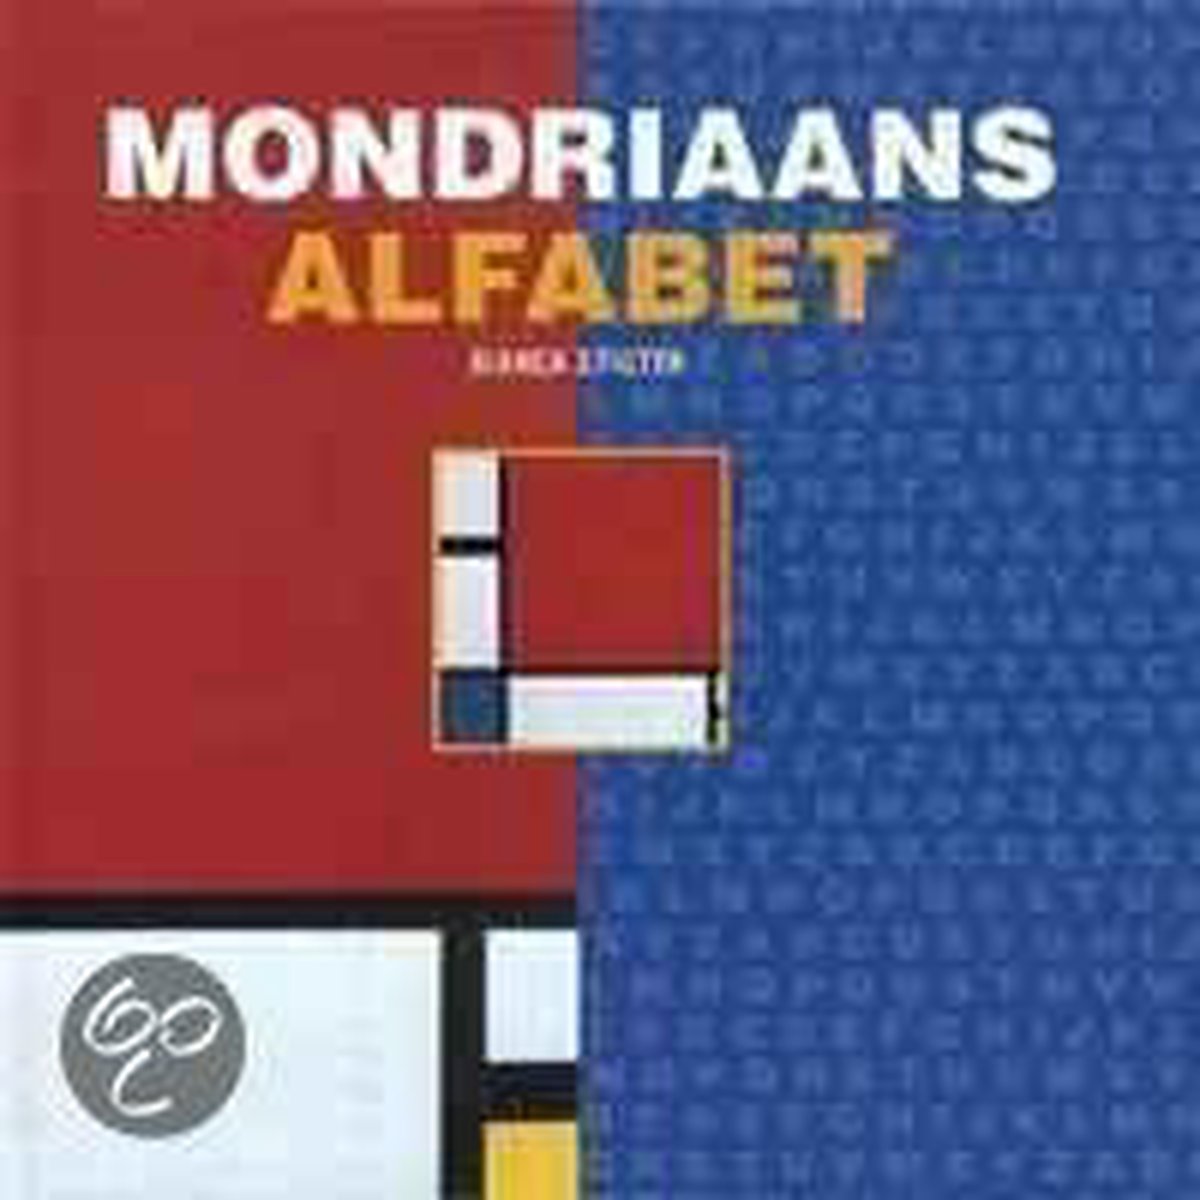 Mondriaans alfabet - van abstract tot zelfportret